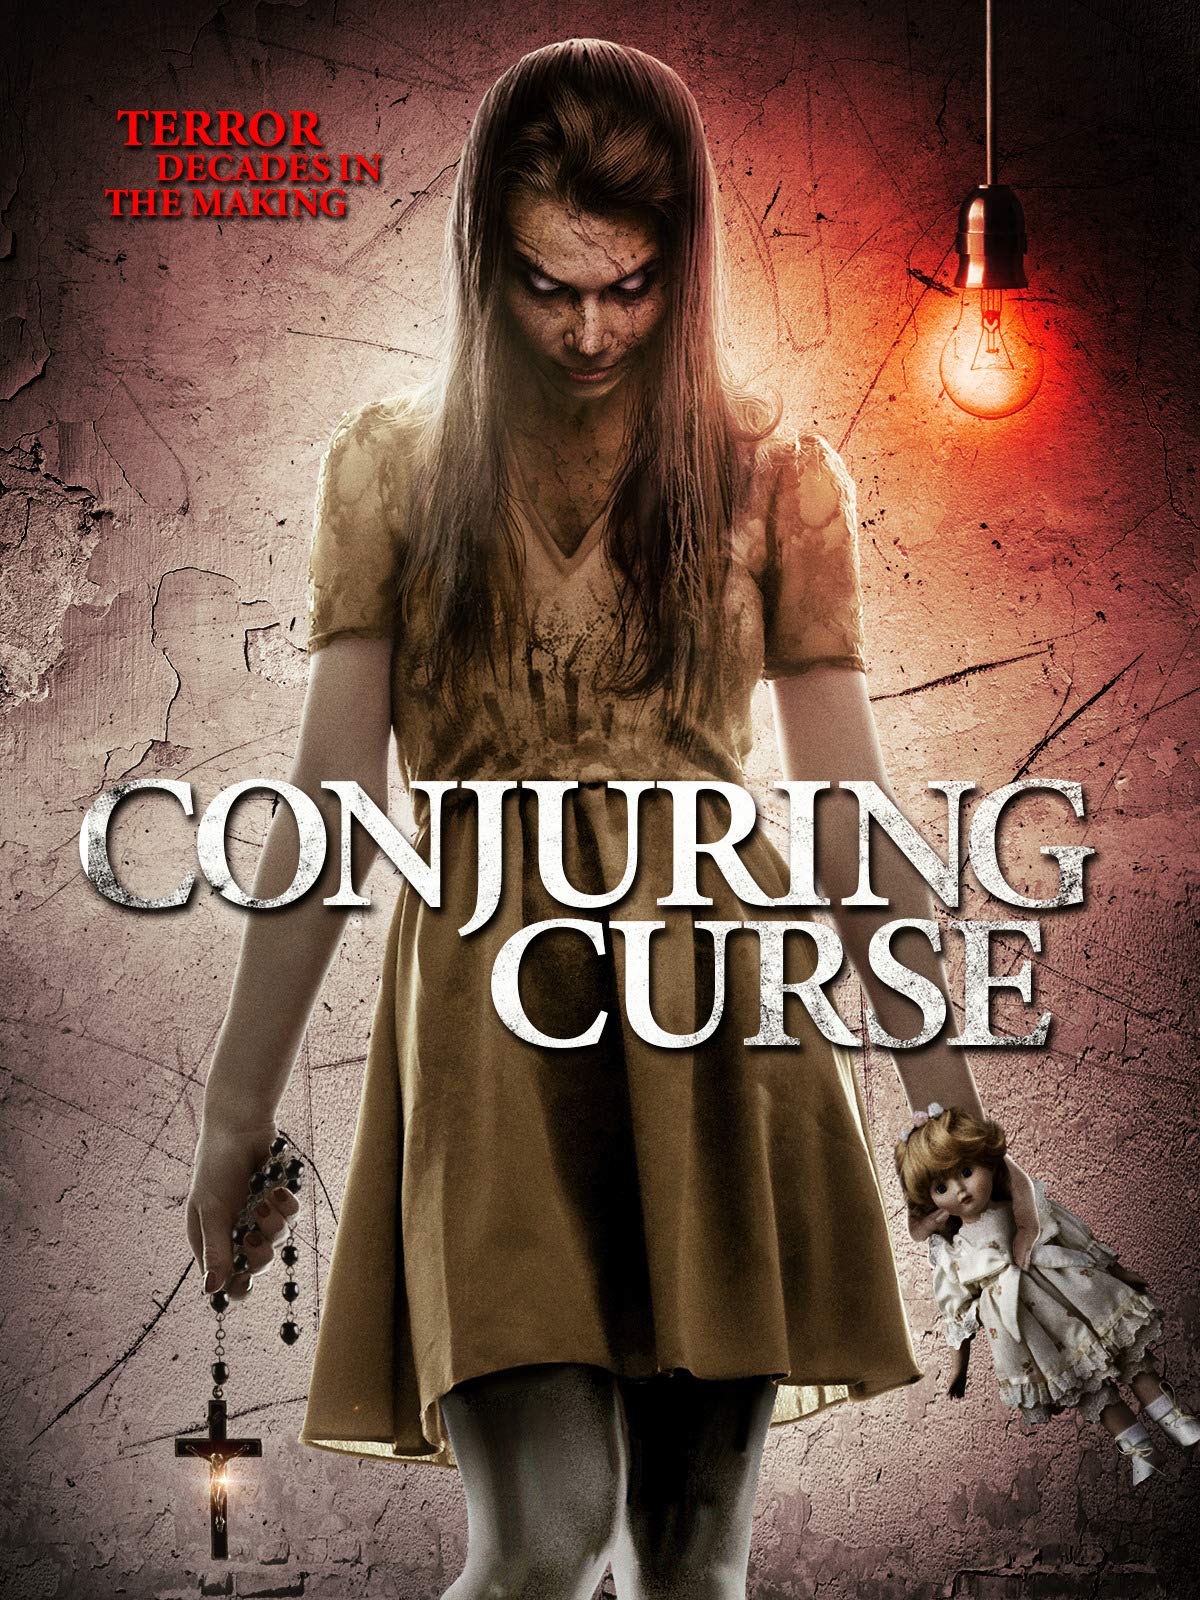 Nonton film Conjuring Curse layarkaca21 indoxx1 ganool online streaming terbaru